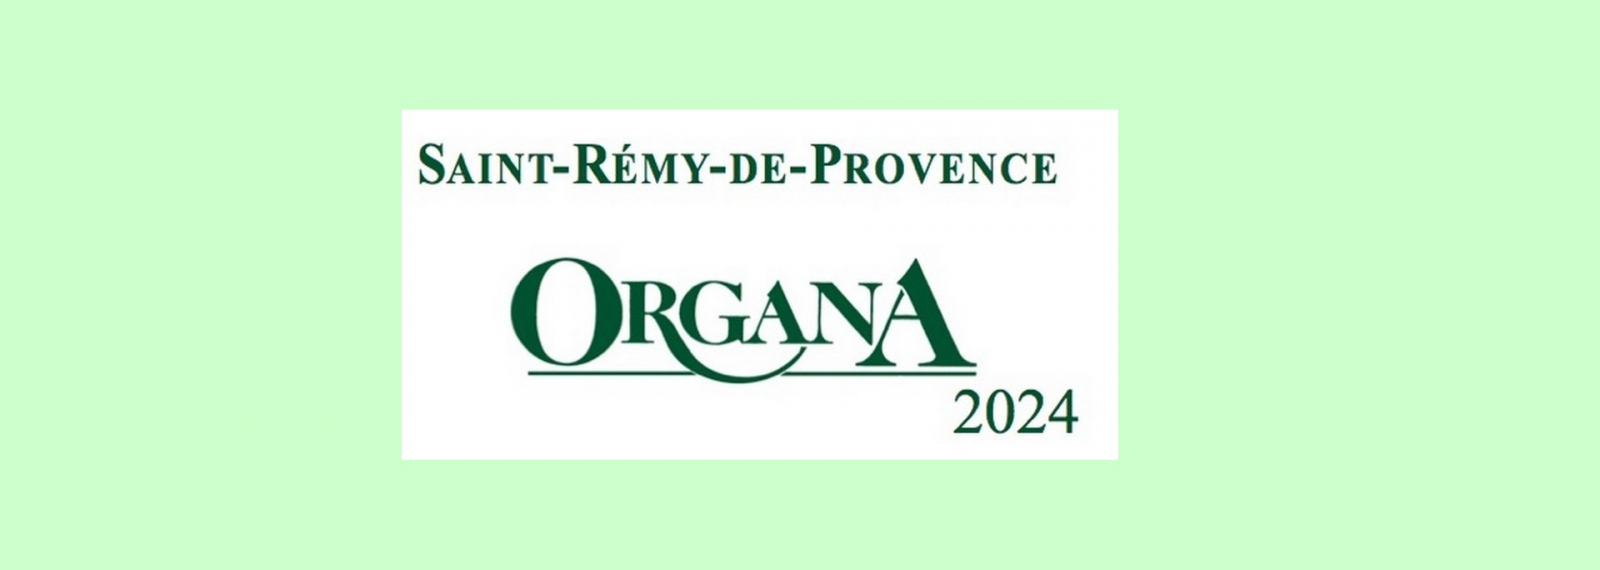 Festival Organa 2024 Saint-Rémy-de-Provence